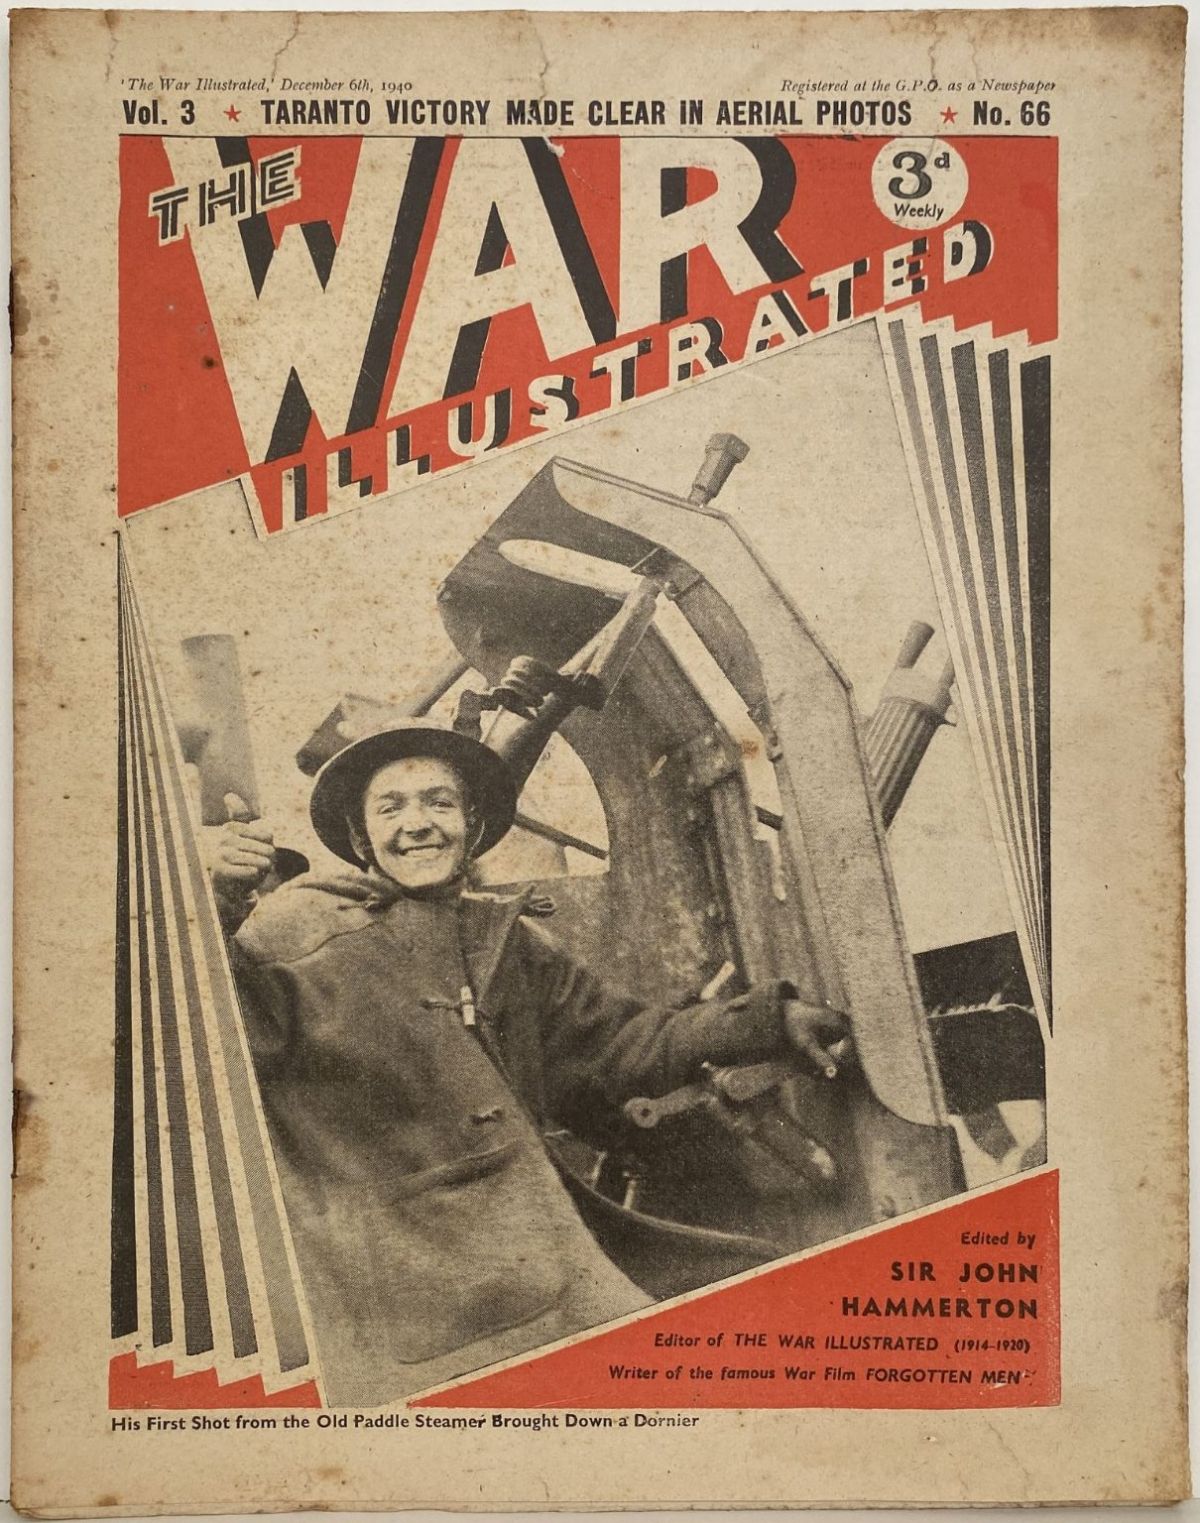 THE WAR ILLUSTRATED - Vol 3, No 66, 6th Dec 1940